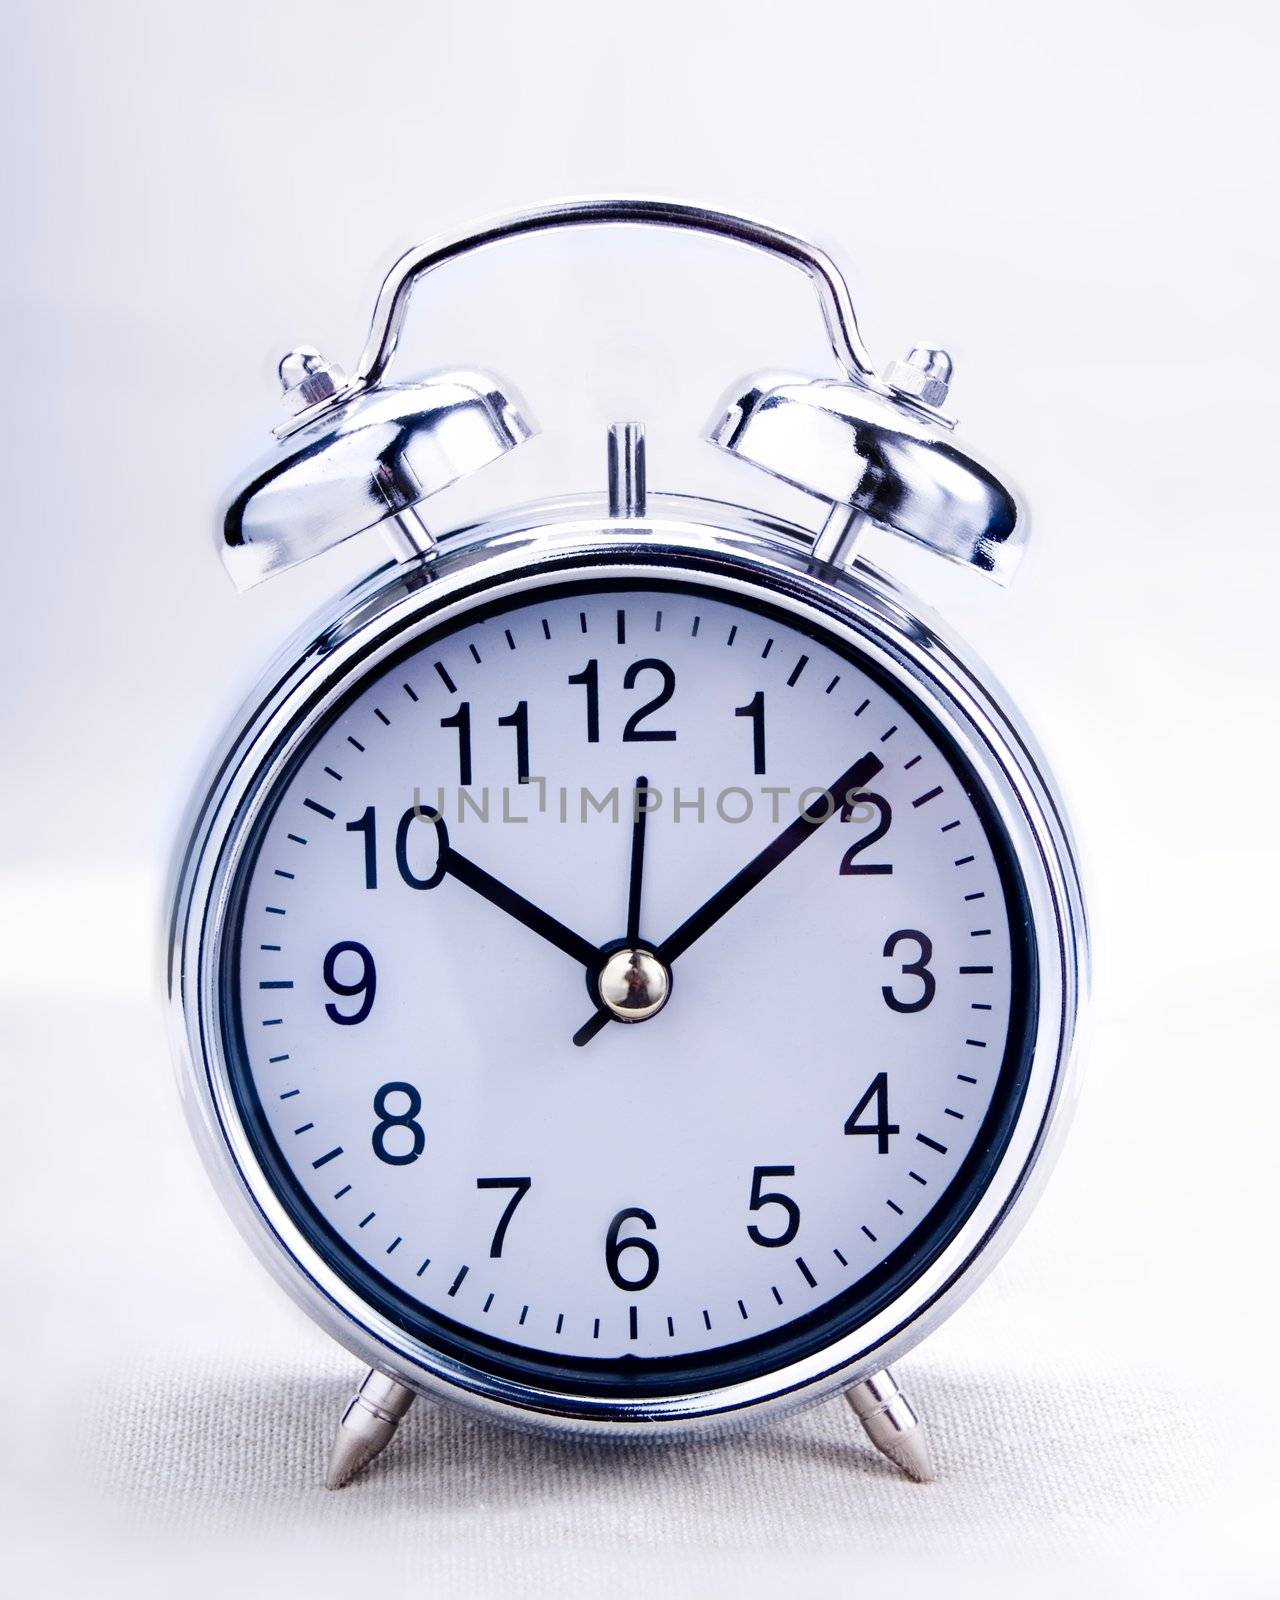 Alarm clock by henrischmit